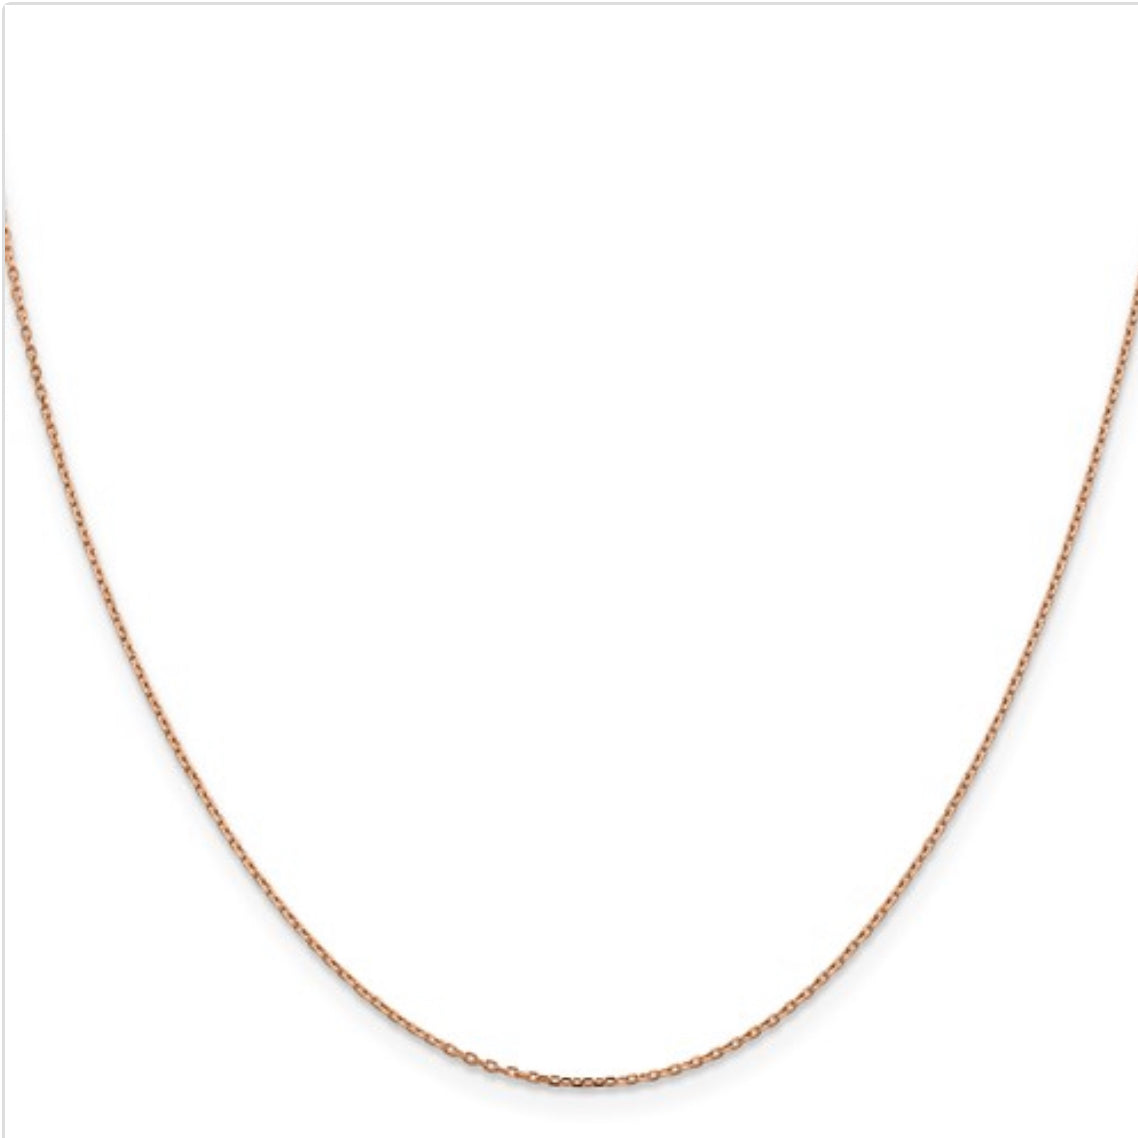 Cadena tipo cable de oro rosa de 14 quilates con cierre de mosquetón - 1,65 mm - varias longitudes